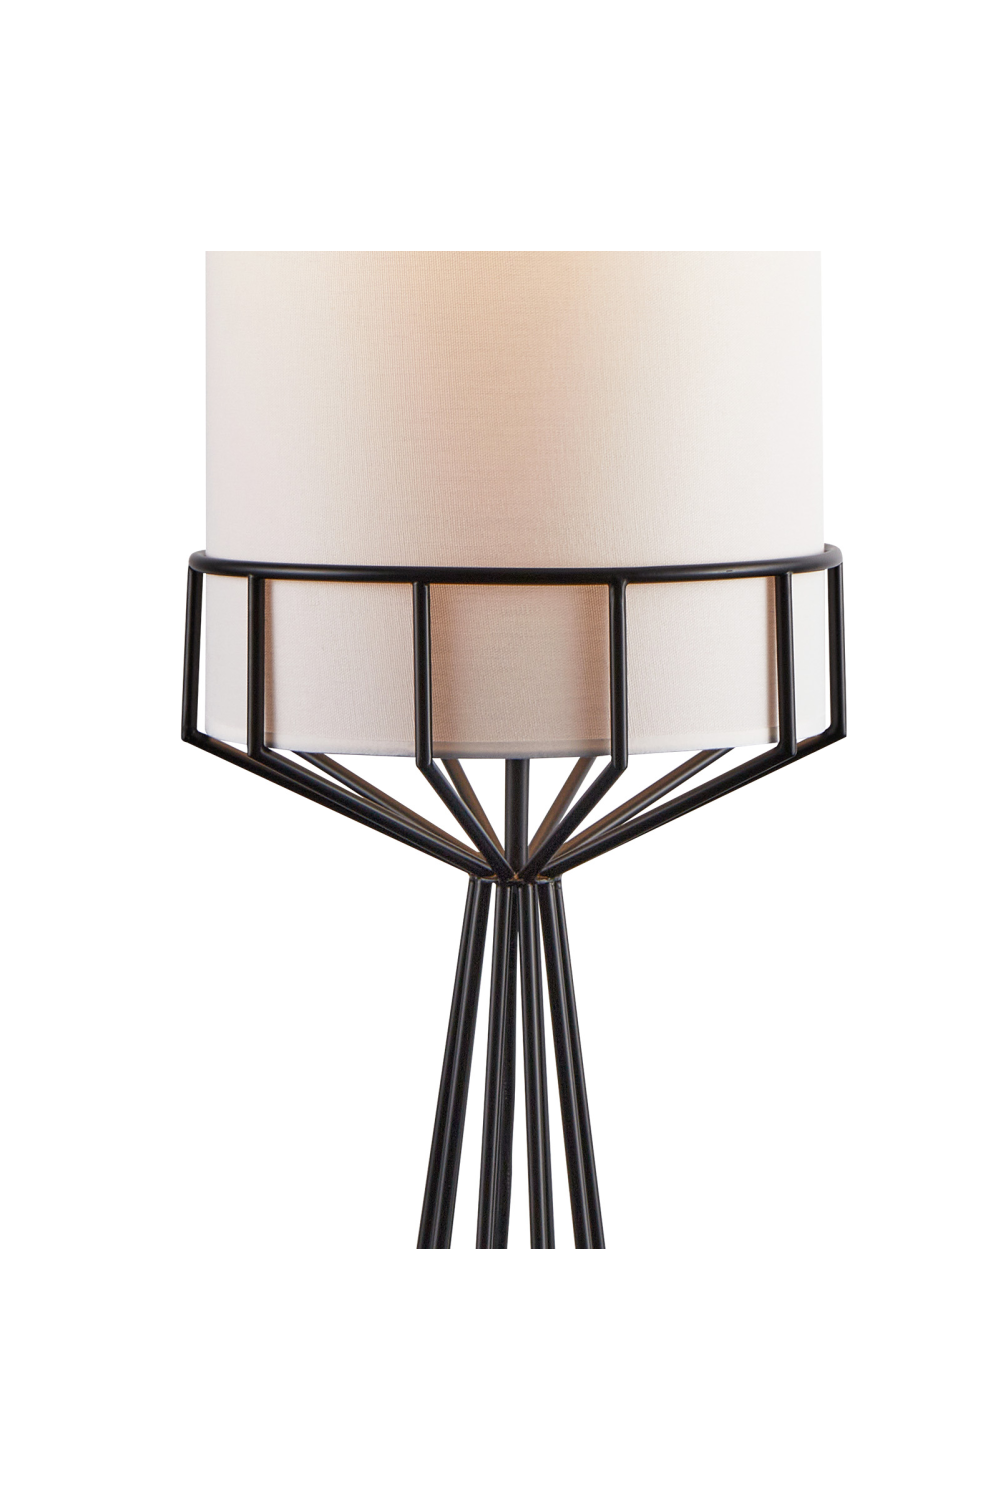 White Linen Tubular Floor Lamp | Liang & Eimil Faro | Oroa.com